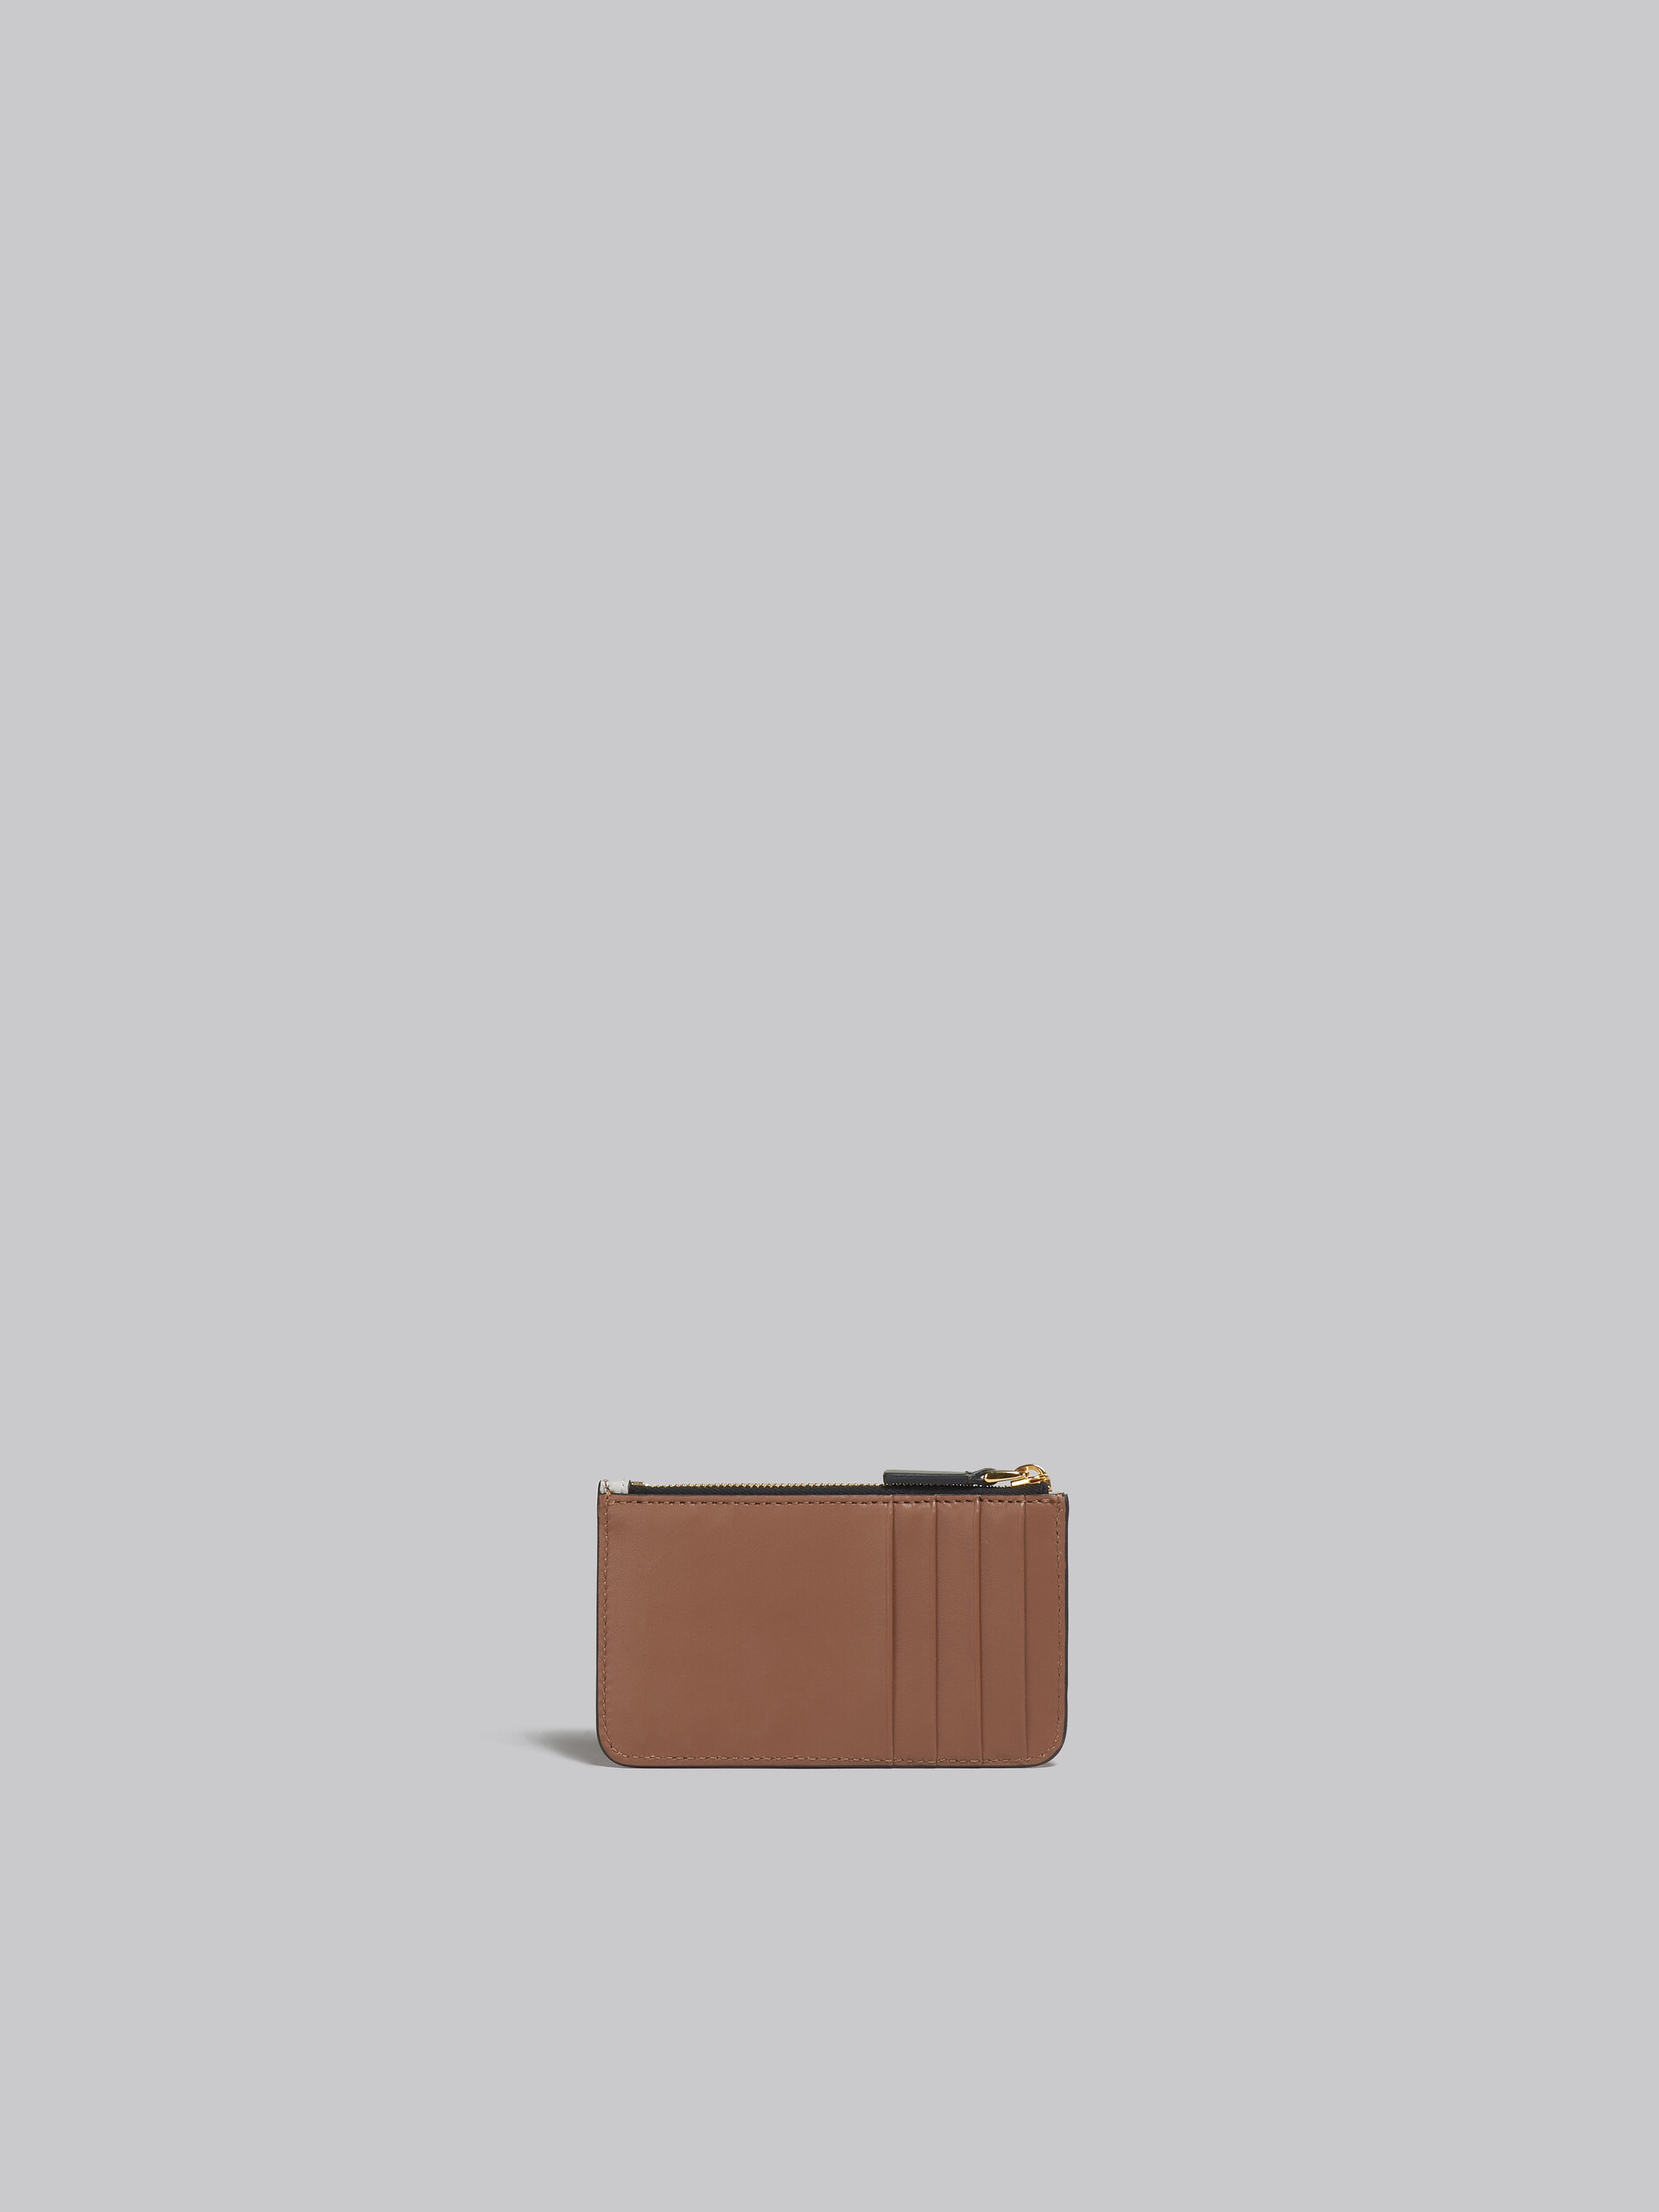 ブラウン、ピンク、バーガンディ サフィアーノレザー製 カードケース - 財布 - Image 3